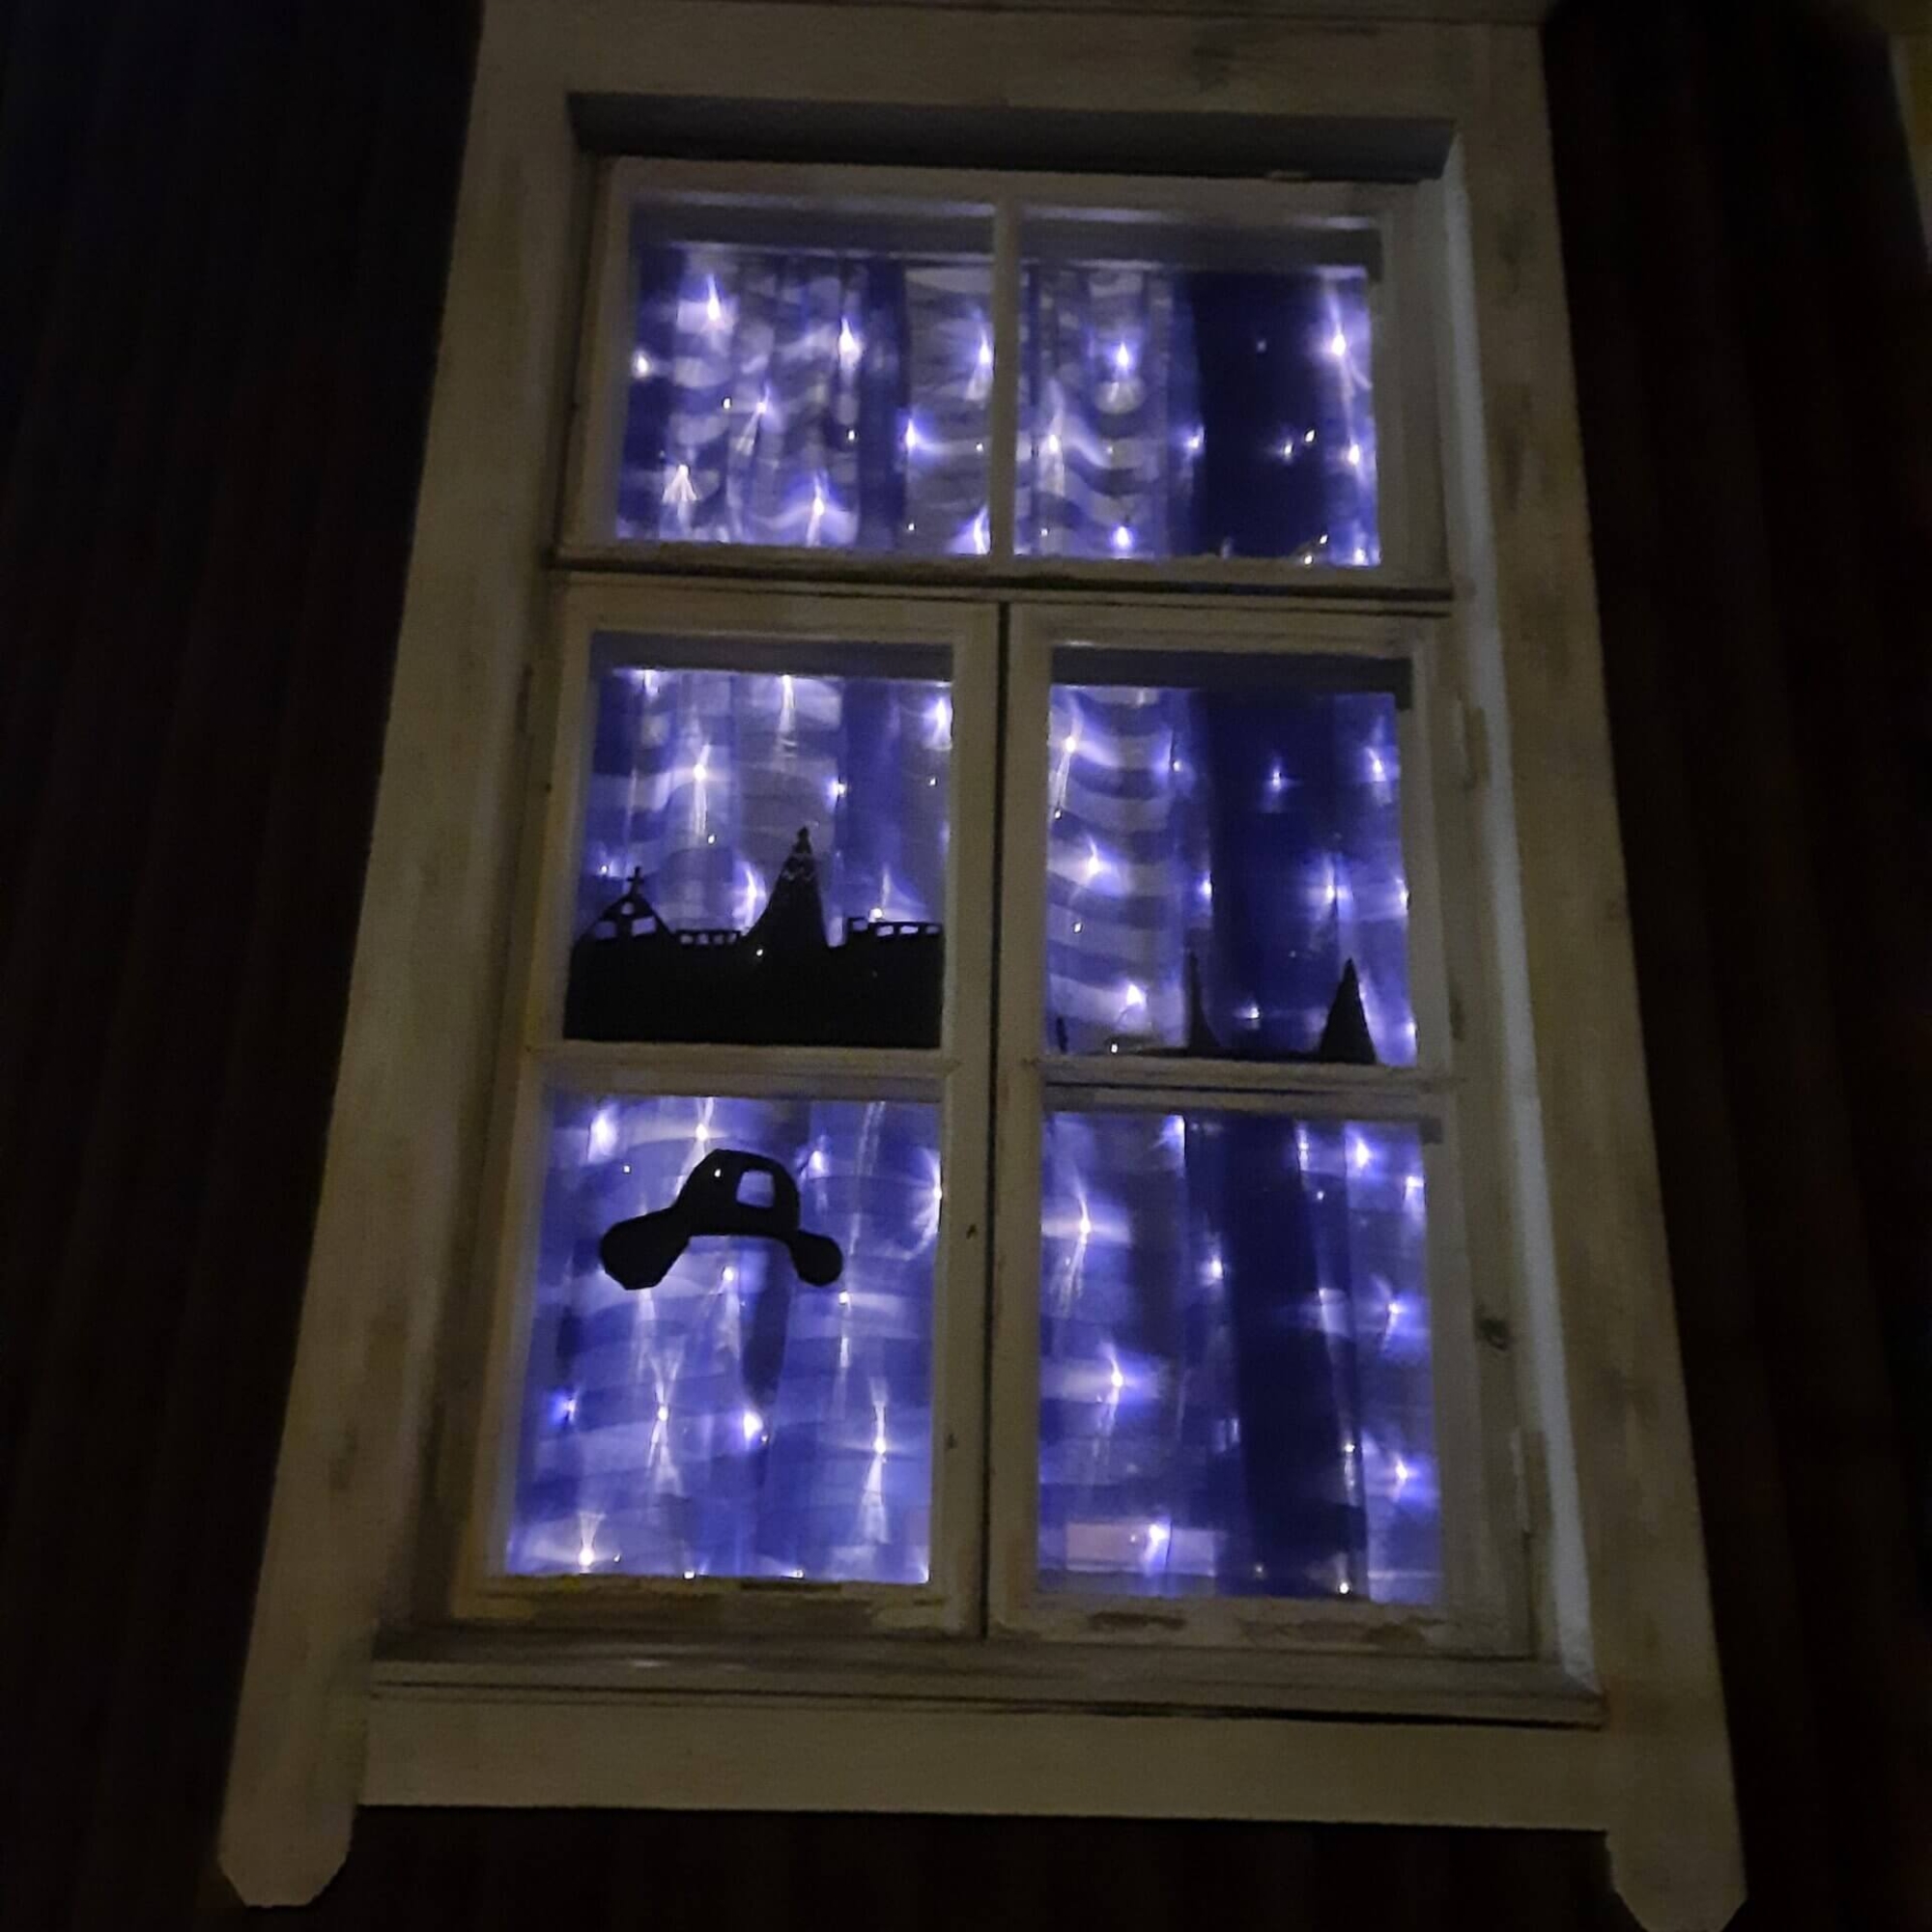 Arkkitehtuuri- ja ympäristökulttuurikoulu Lastun luokkahuoneen ikkunat saivat sinisen valaistuksen vastauksena Unicefin haasteeseen valaista tärkeitä rakennuksia sinisellä valolla.